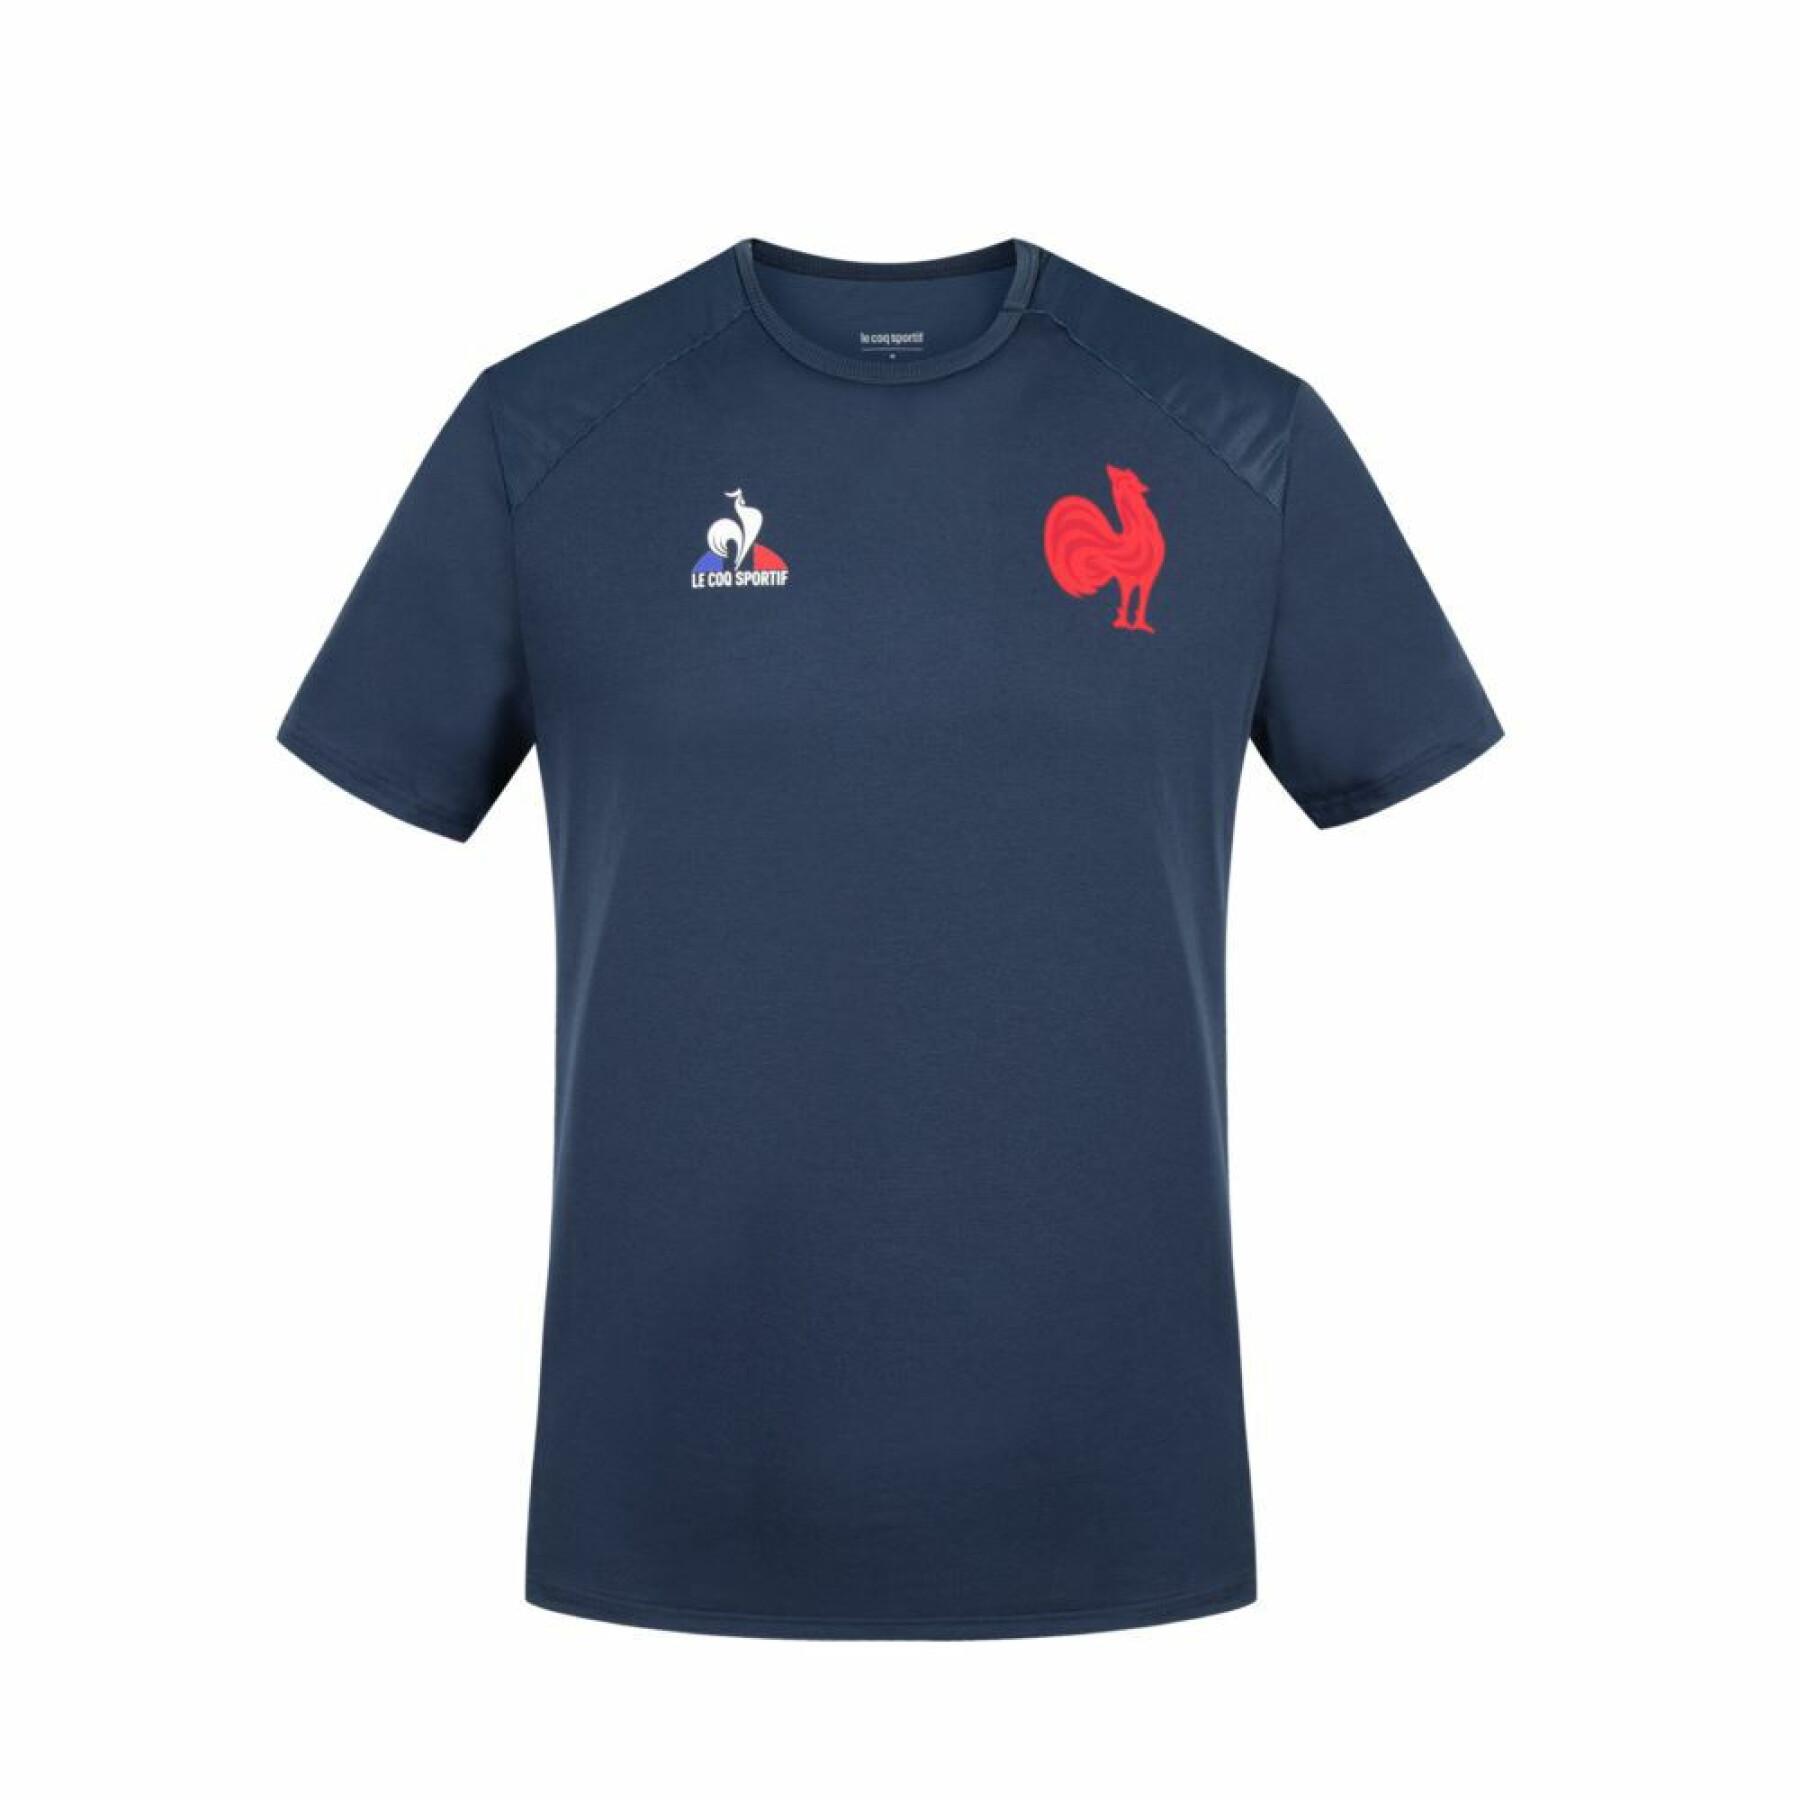 T-shirt allenamento XV de France 2021/22